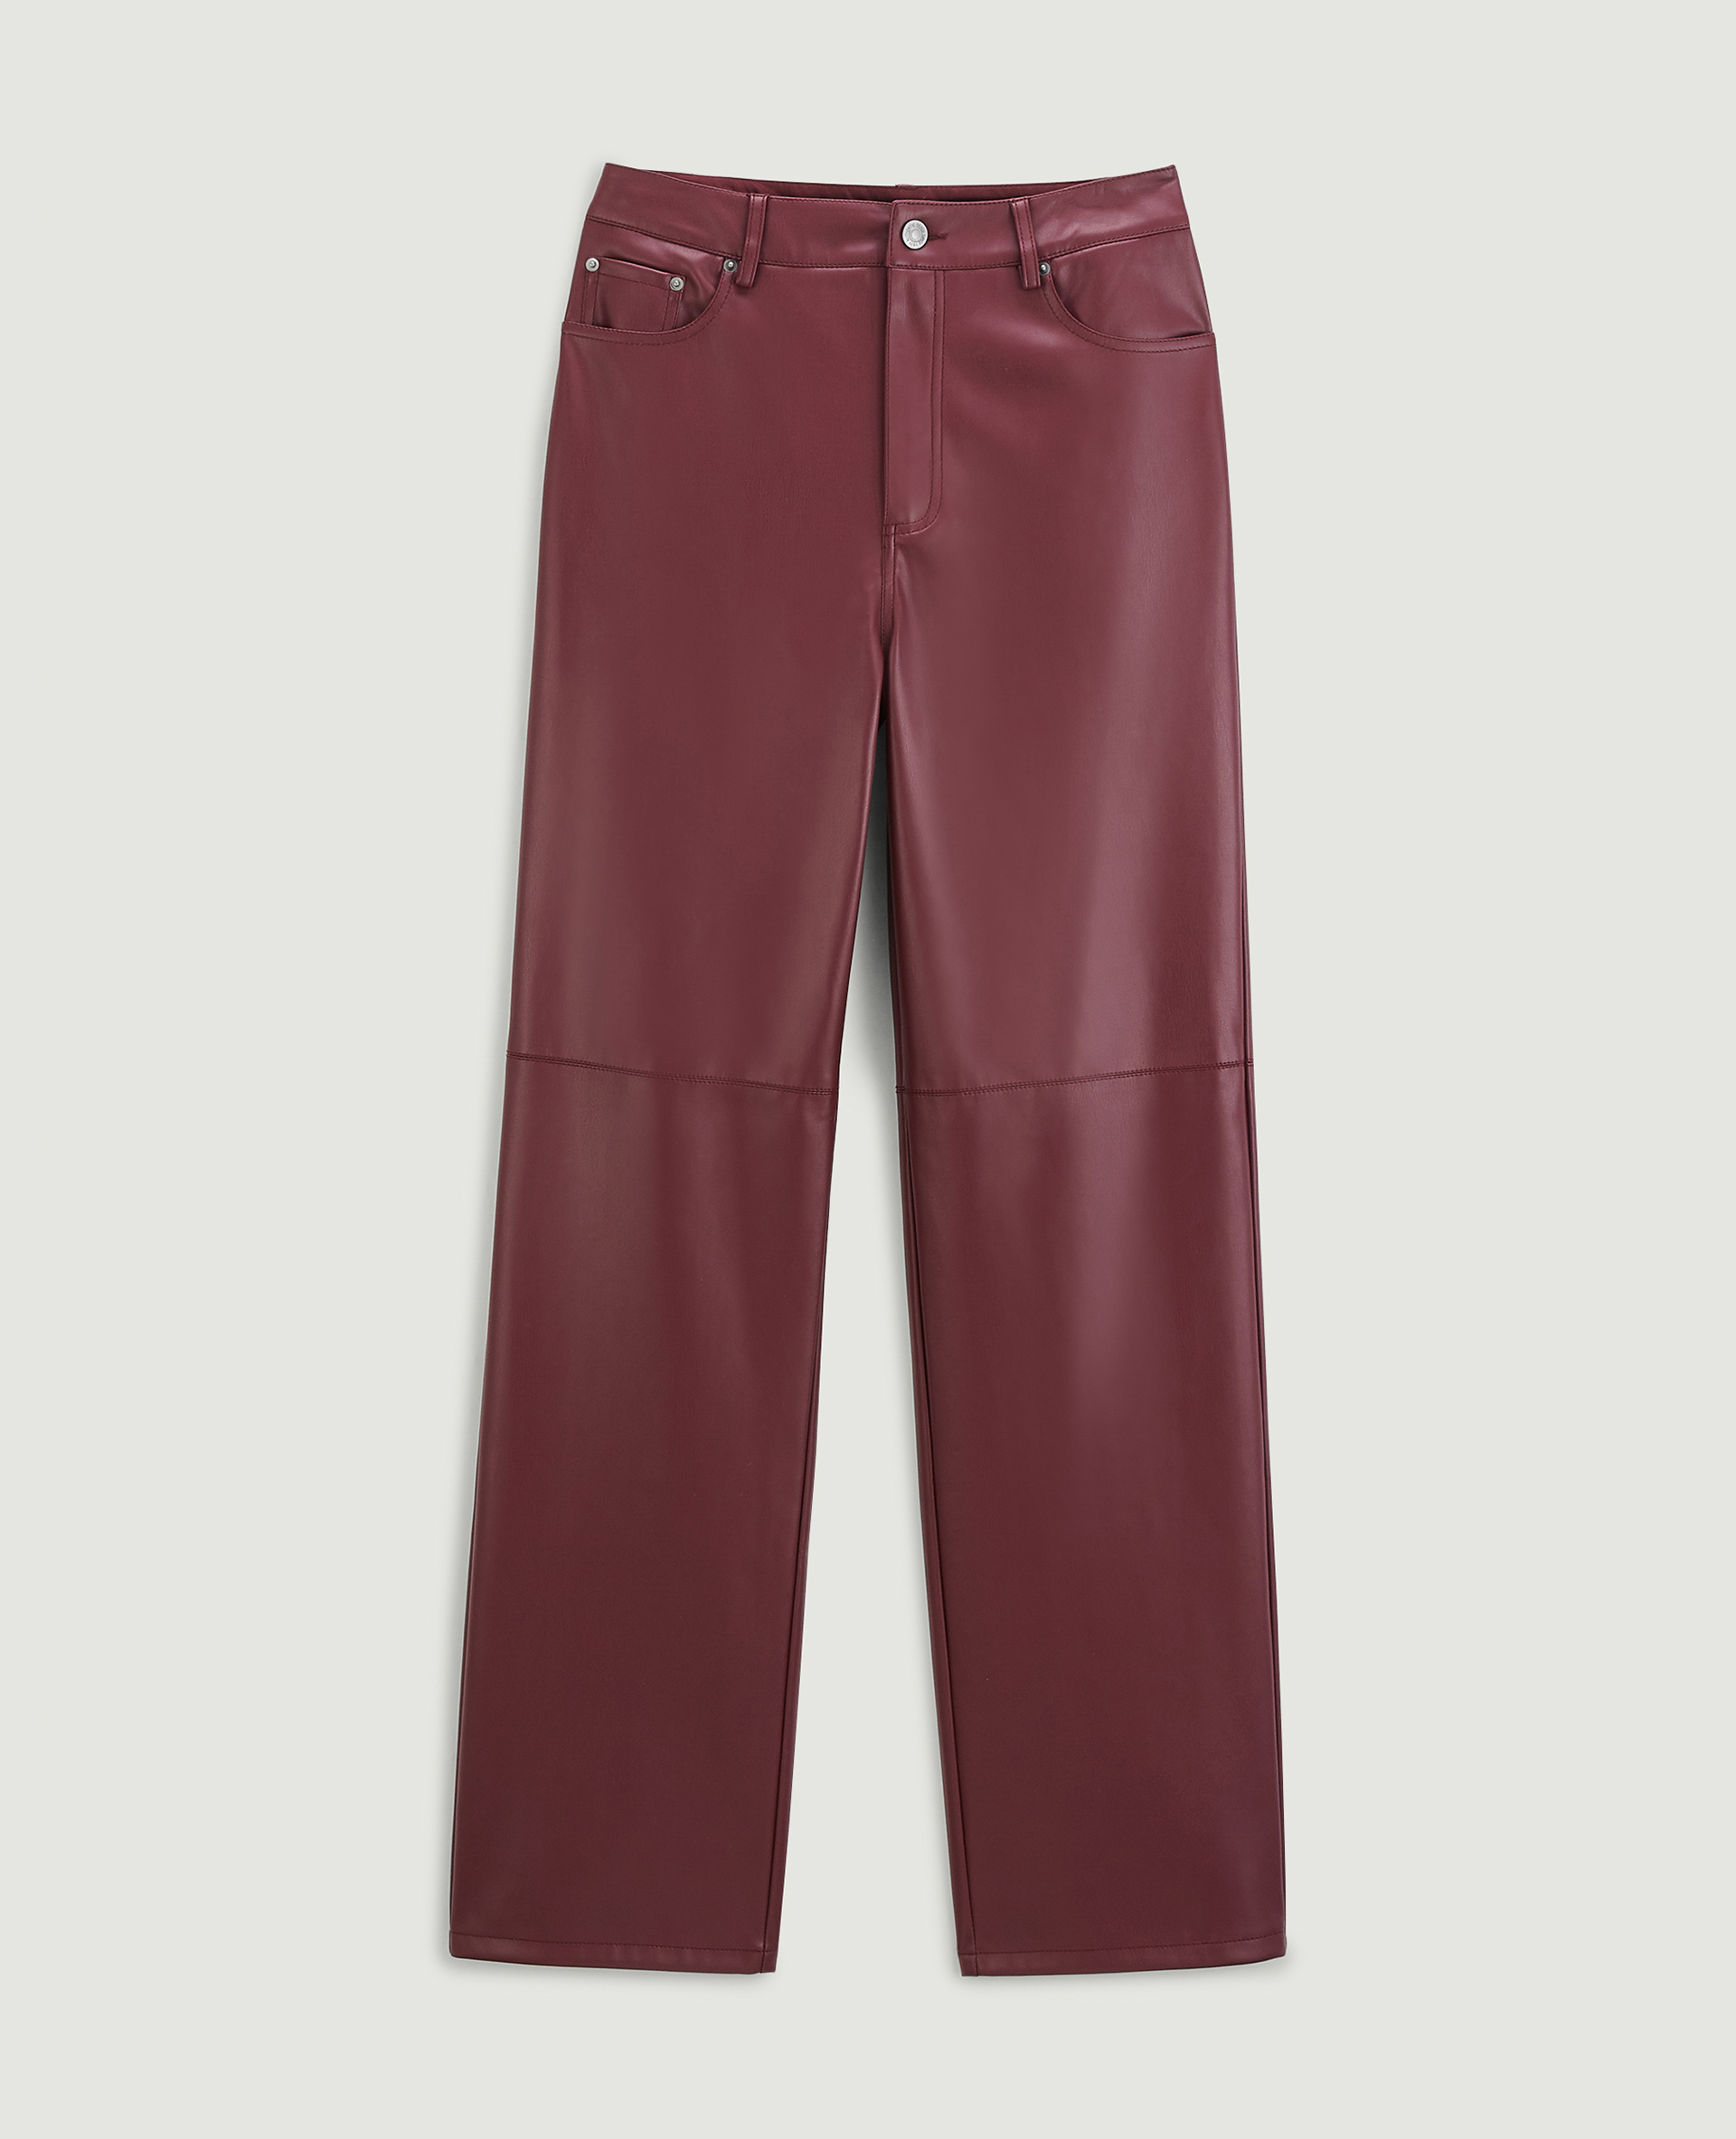 Pantalon droit en simili cuir rouge - Pimkie